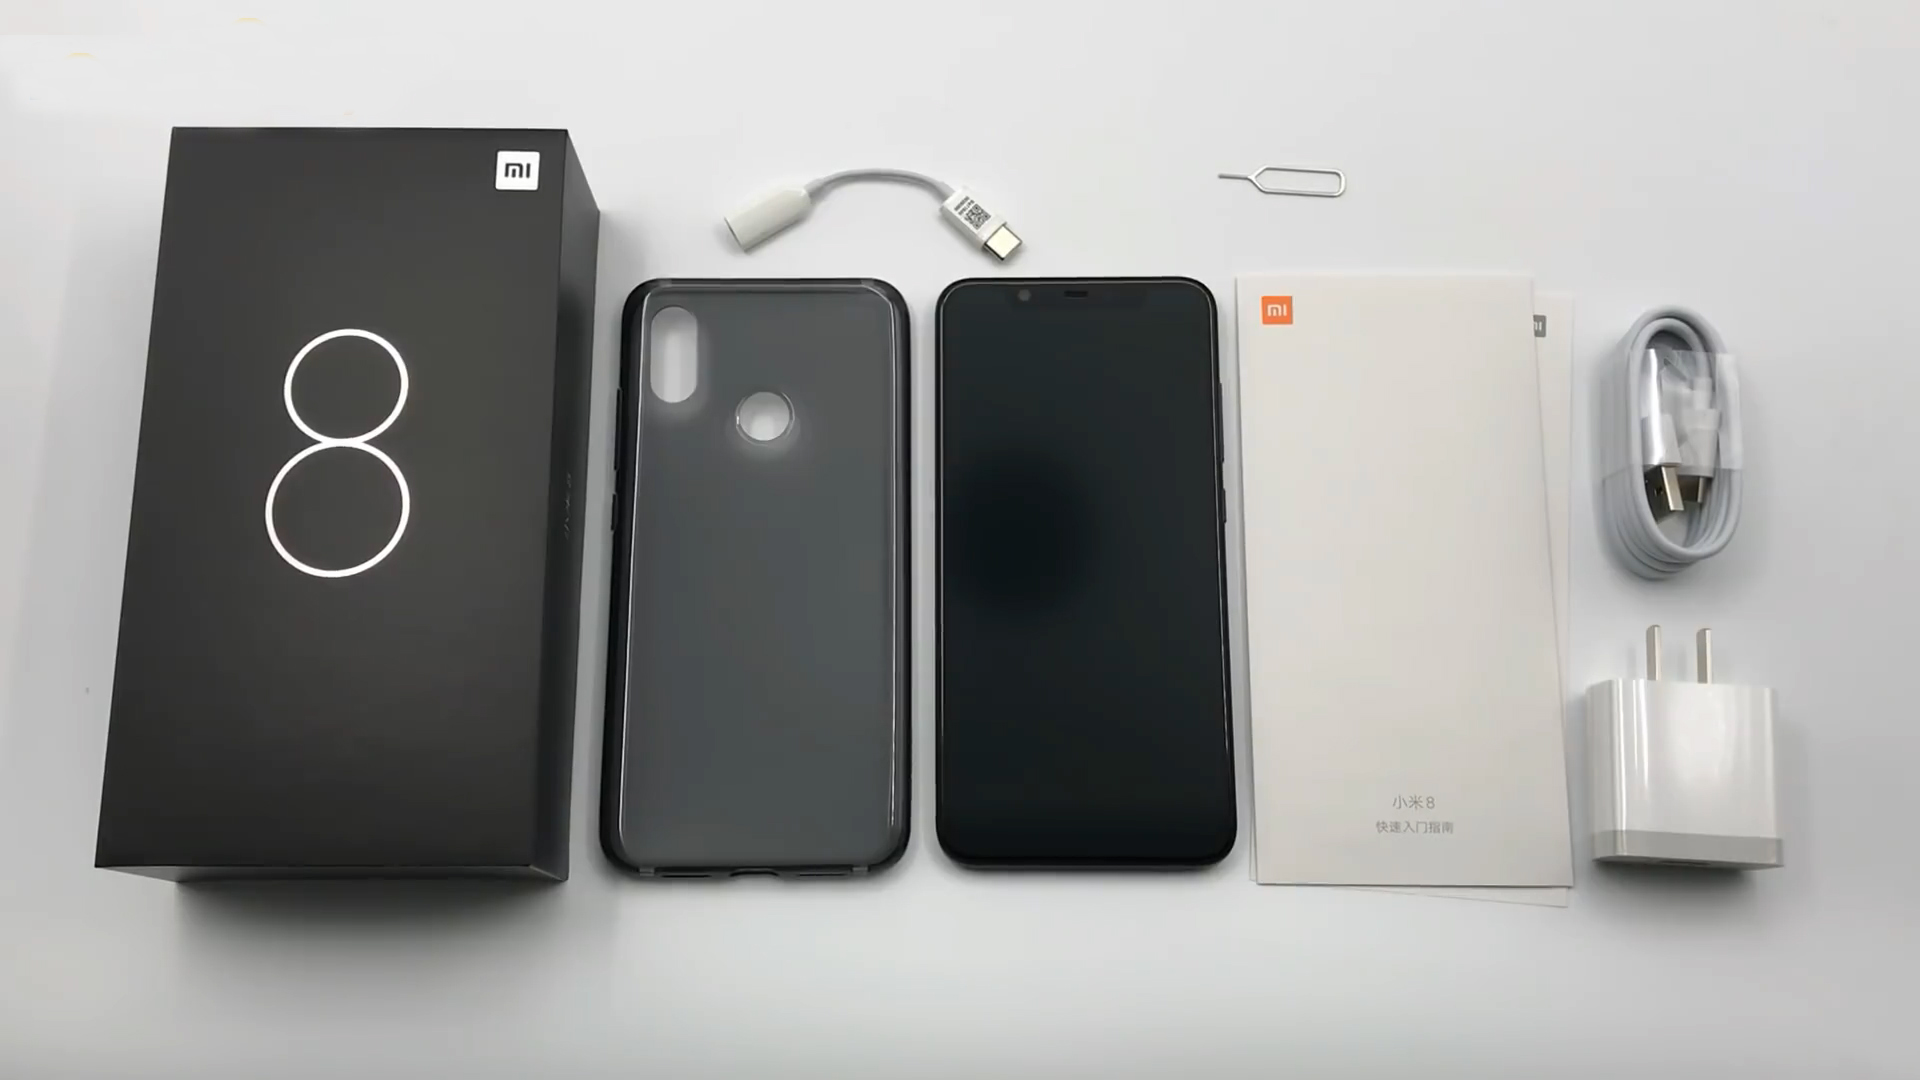 Xiaomi Mi 8 Black